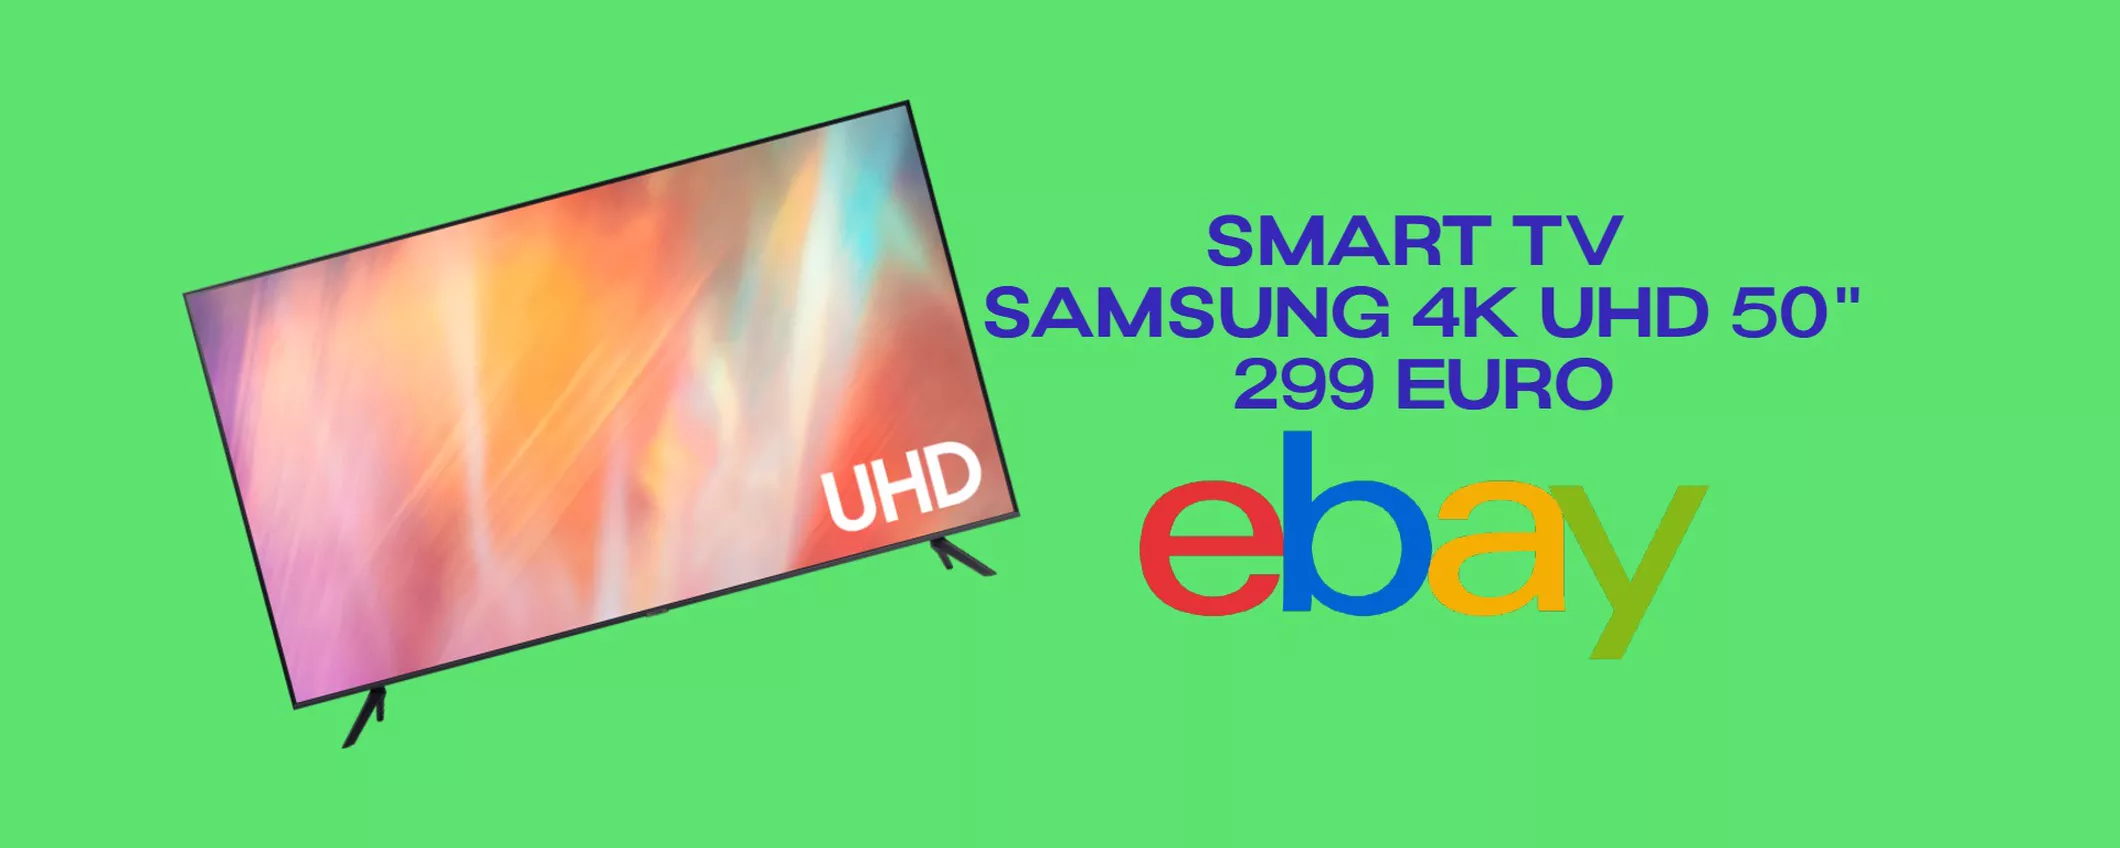 Samsung: SCONTO PAZZESCO di oltre 400€ sullo Smart TV Crystal 4K UHD da 50 pollici